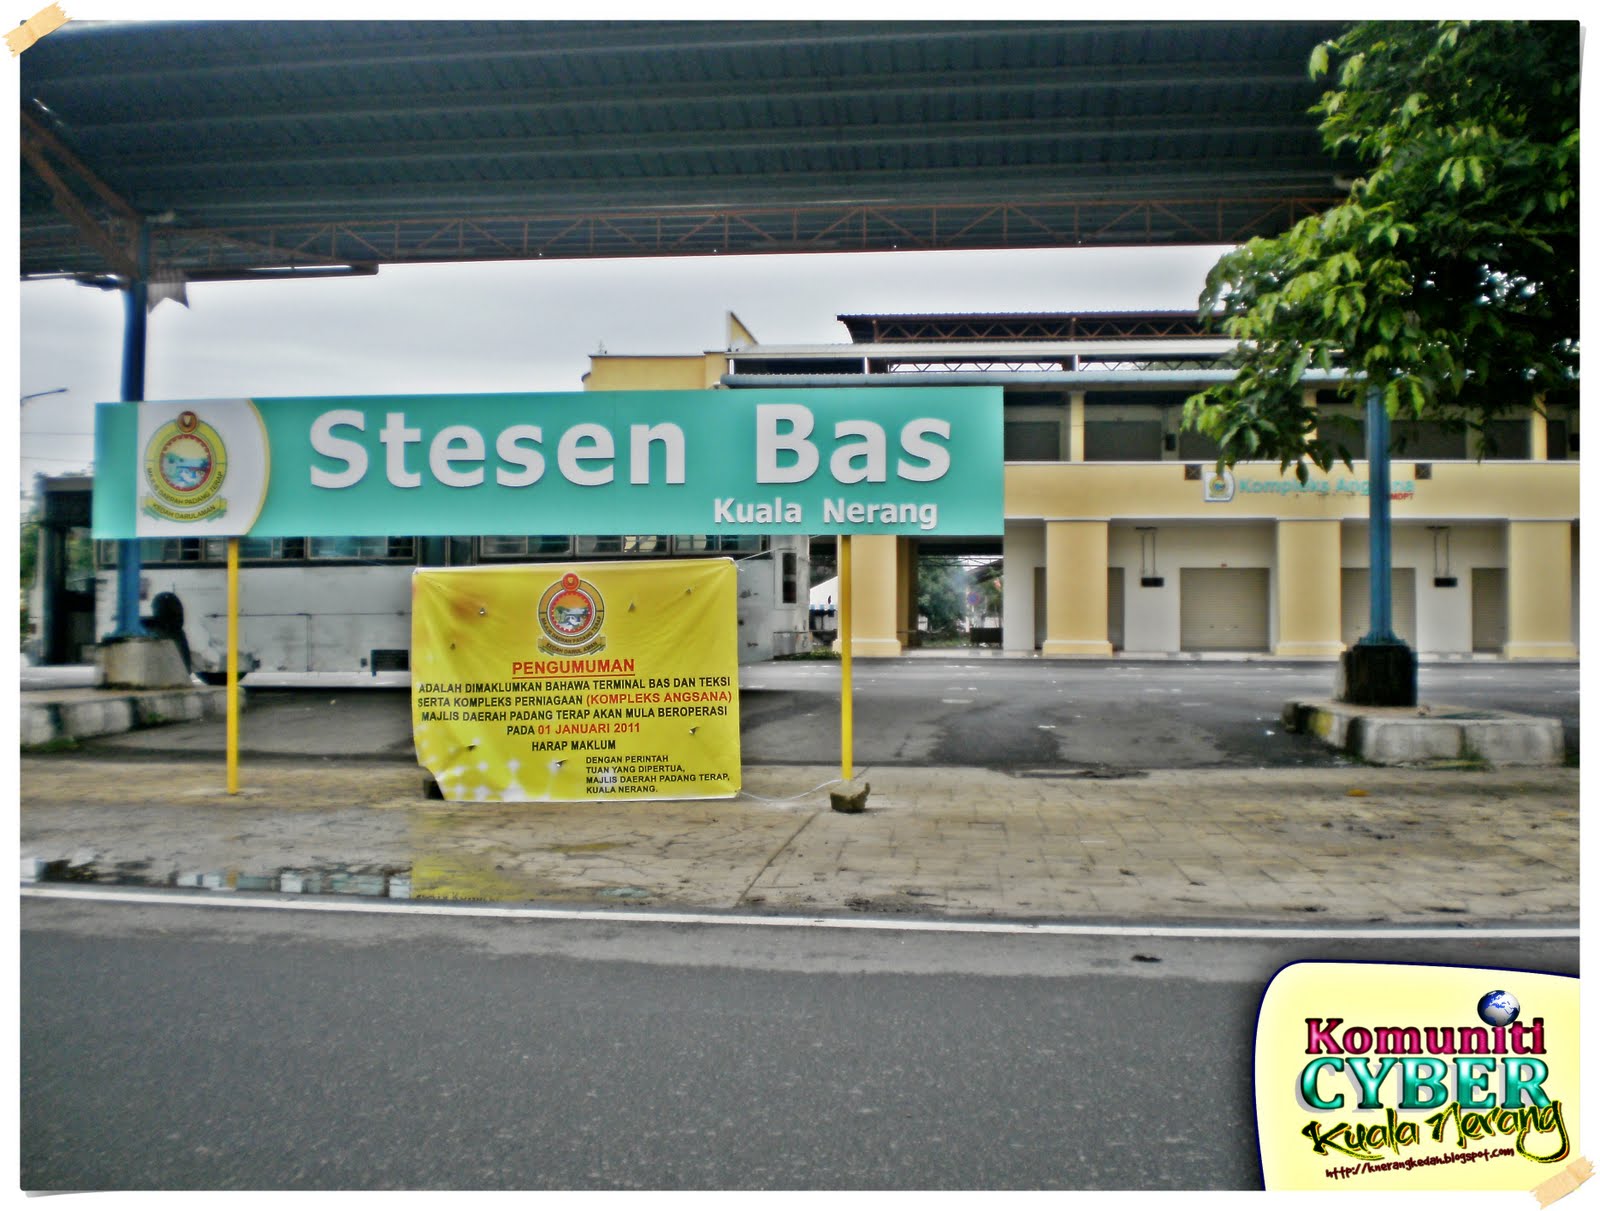 Kuala Nerang: Stesen Bas Kuala Nerang